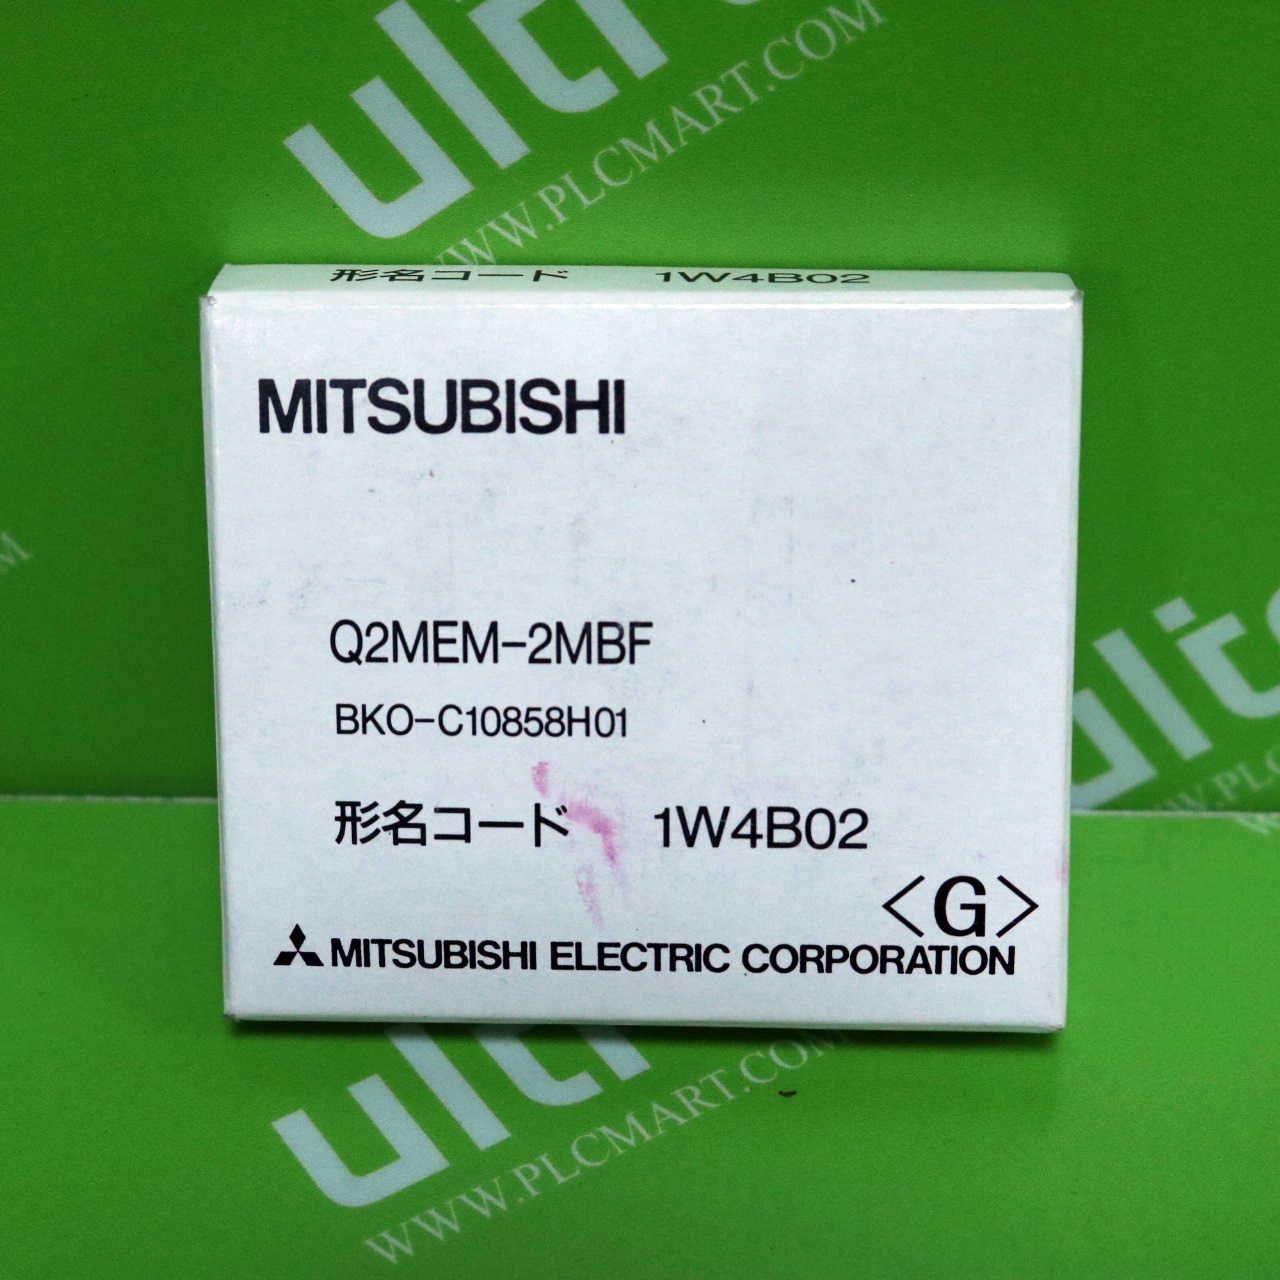 [신품] Q2MEM-2MBF 미쯔비시 메모리카드 2M (소형 리니어 플래시 카드)